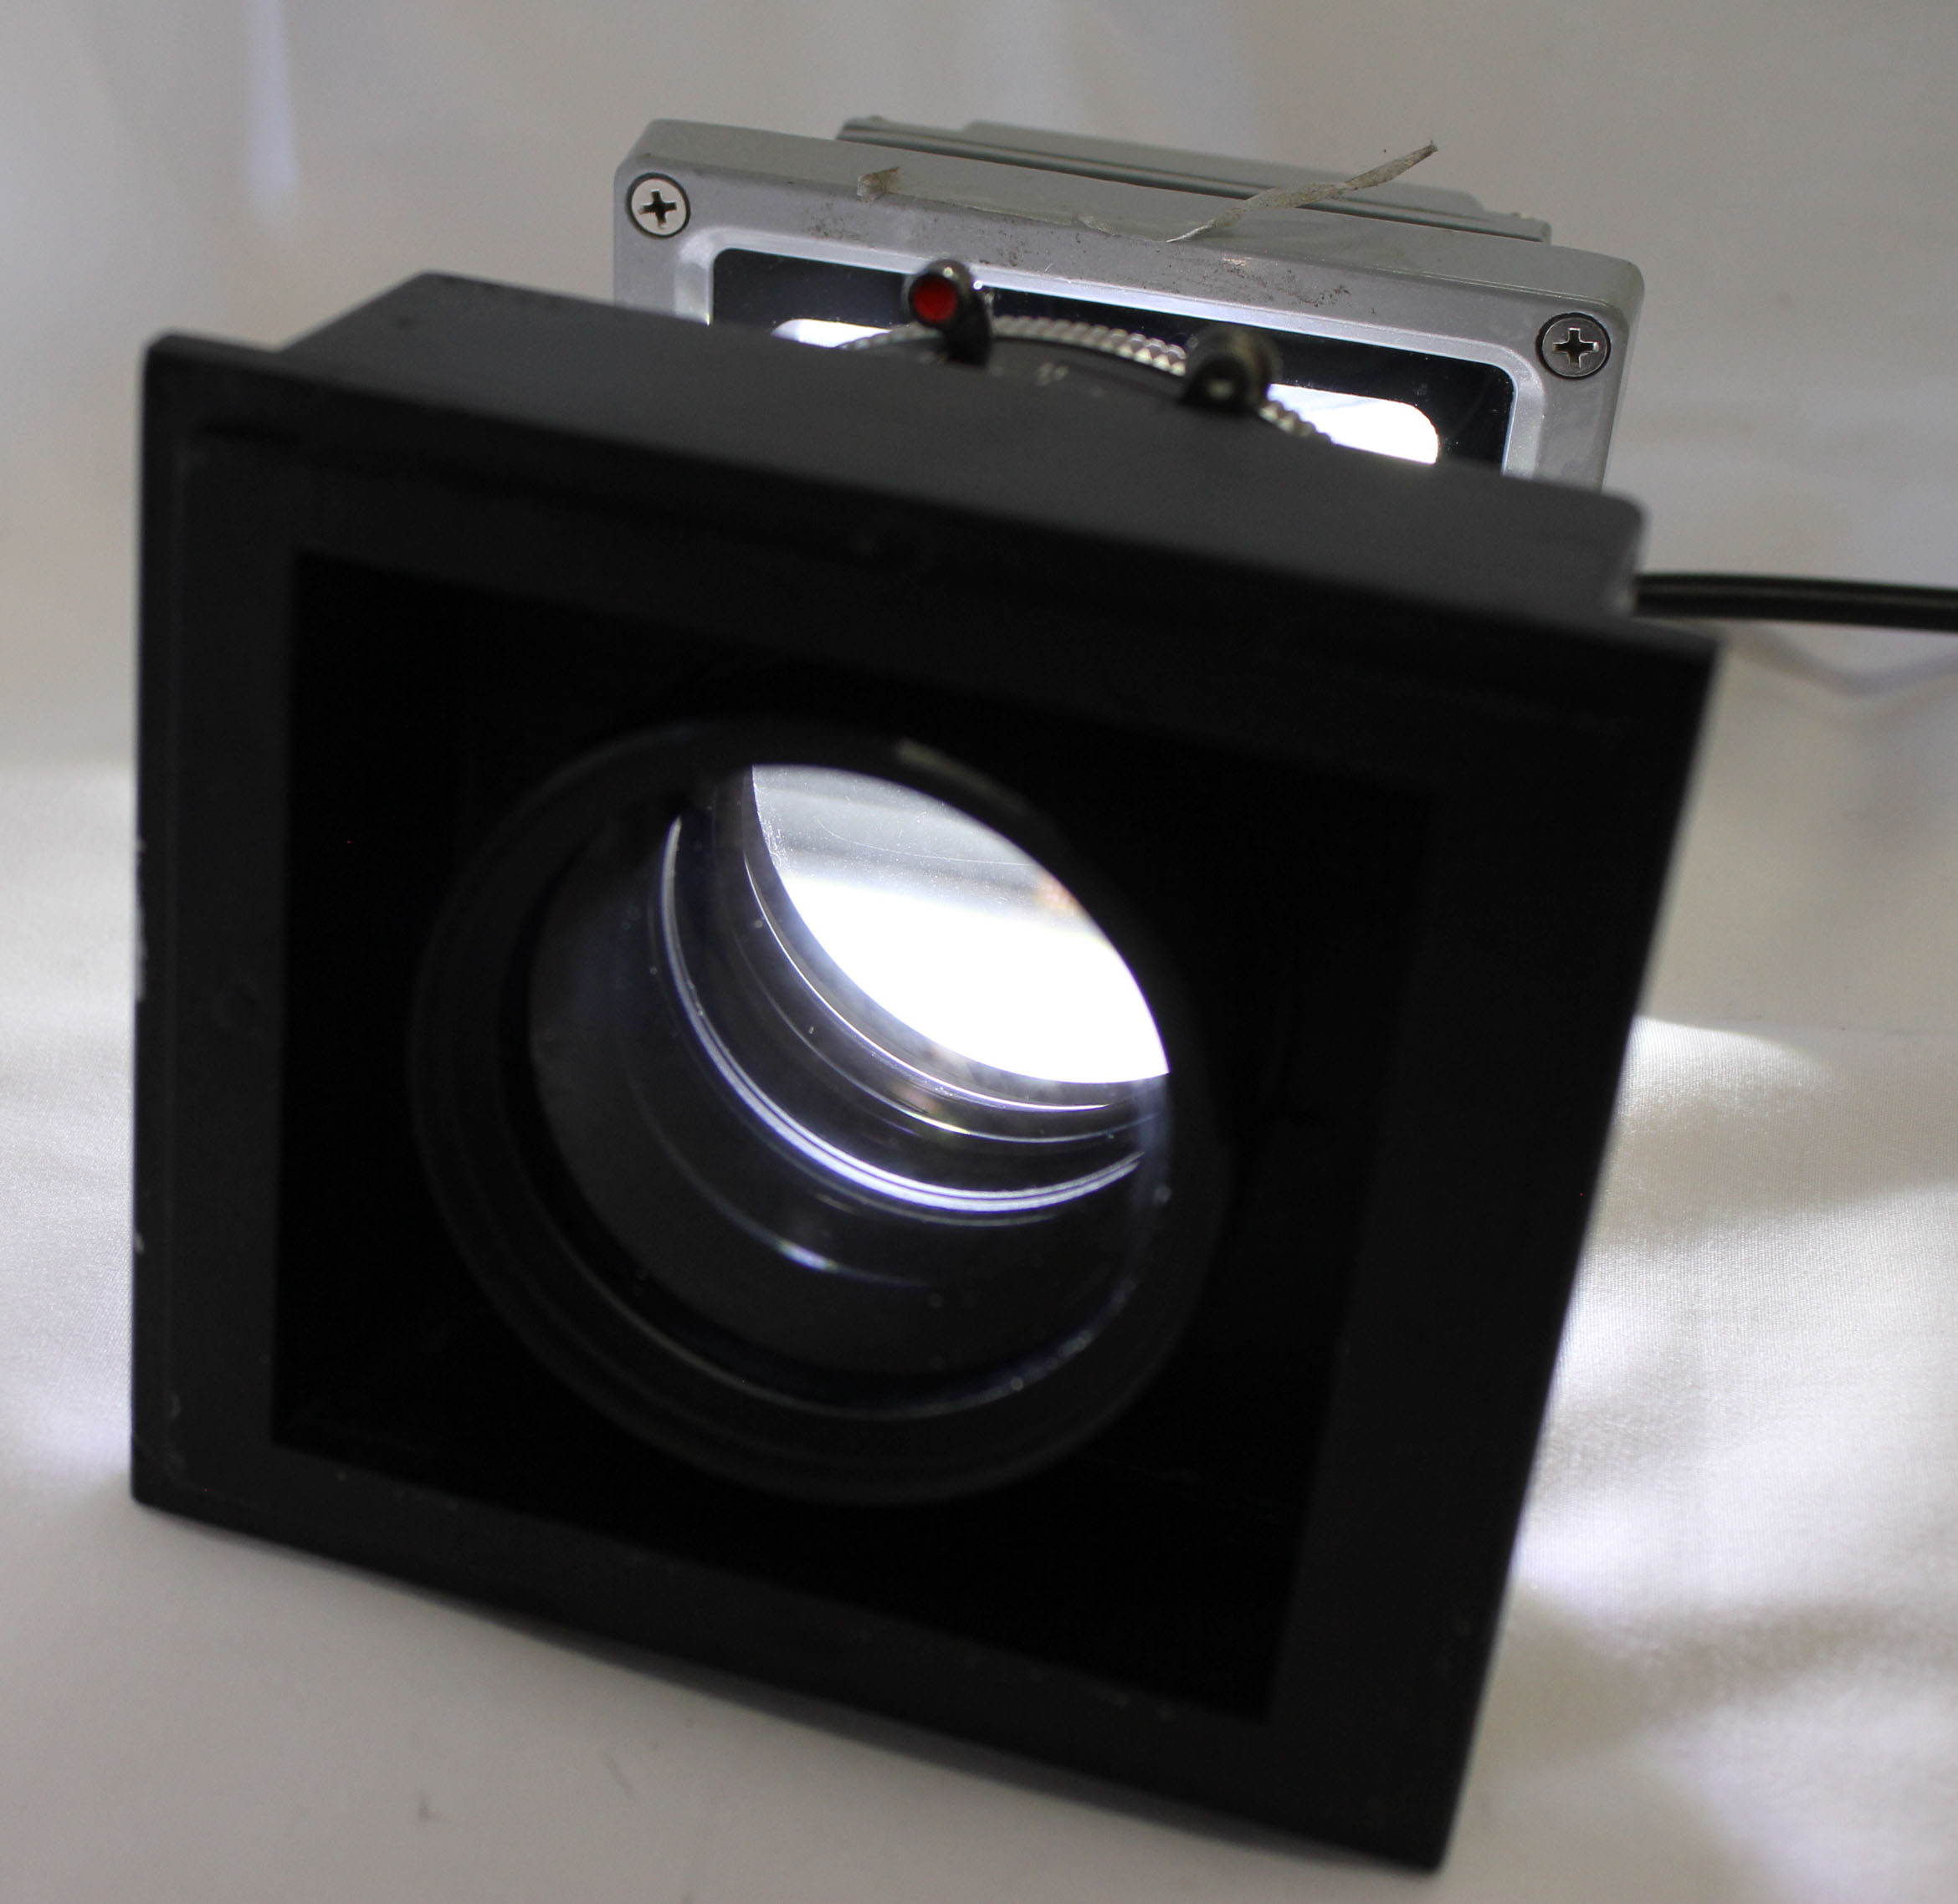 Fuji Fujinon W 300mm F/5.6 8x10 4x5 Large Format Lens Copal No.3 Shutter from Japan Photo 11